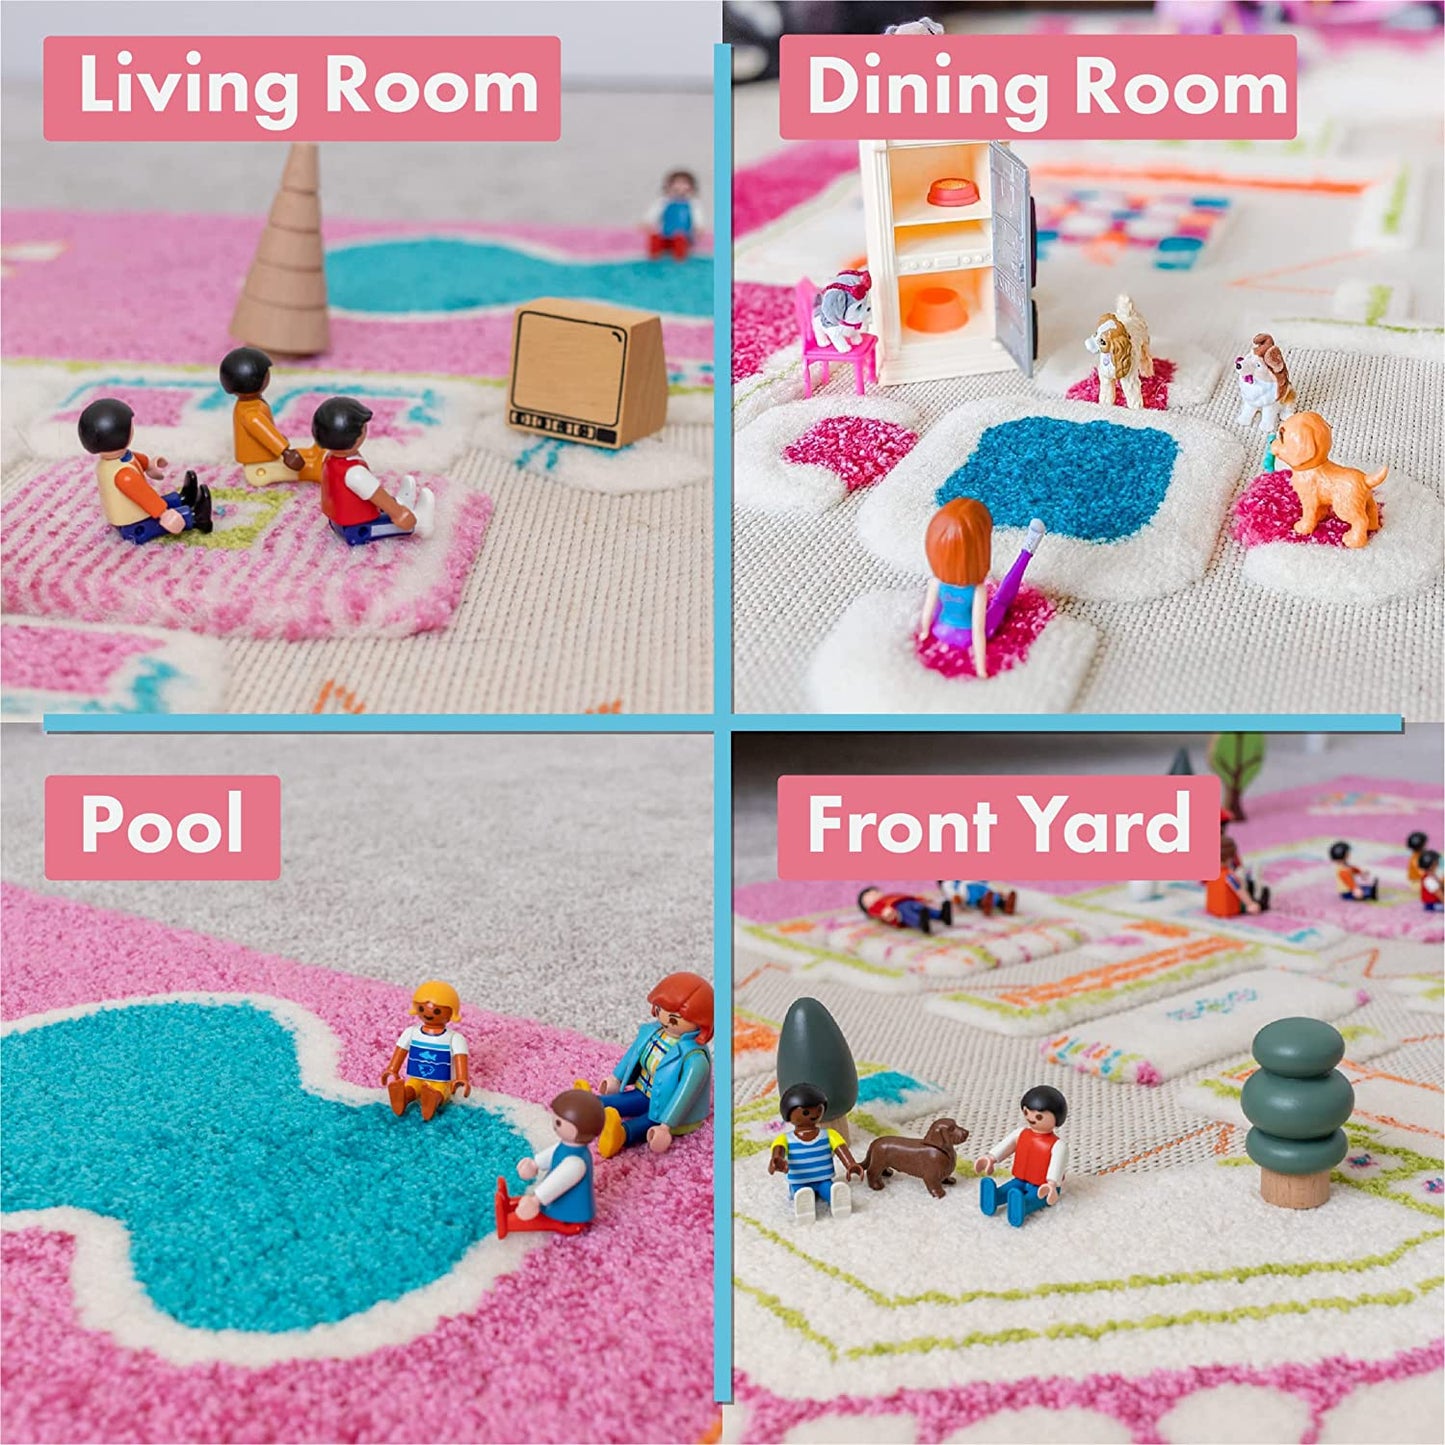 IVI 3D Play Carpet, Playhouse Design - Medium Size (150cm x 100cm) - Neo Essentials Store